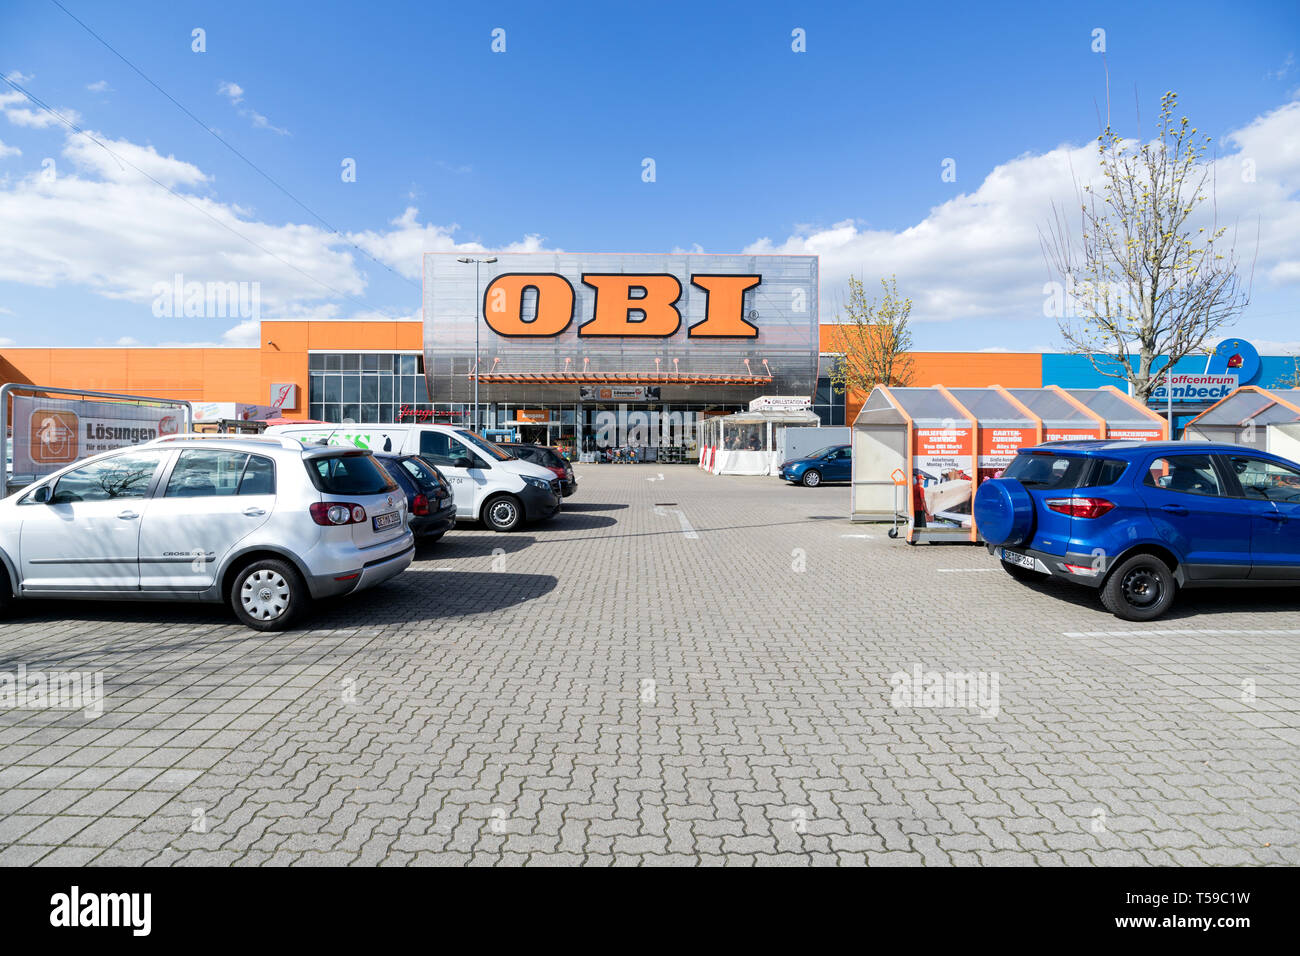 Obi Markt In Norderstedt Deutschland Obi Ist Der Grosste Diy Handler In Europa Und Der Drittgrosste Der Welt Stockfotografie Alamy